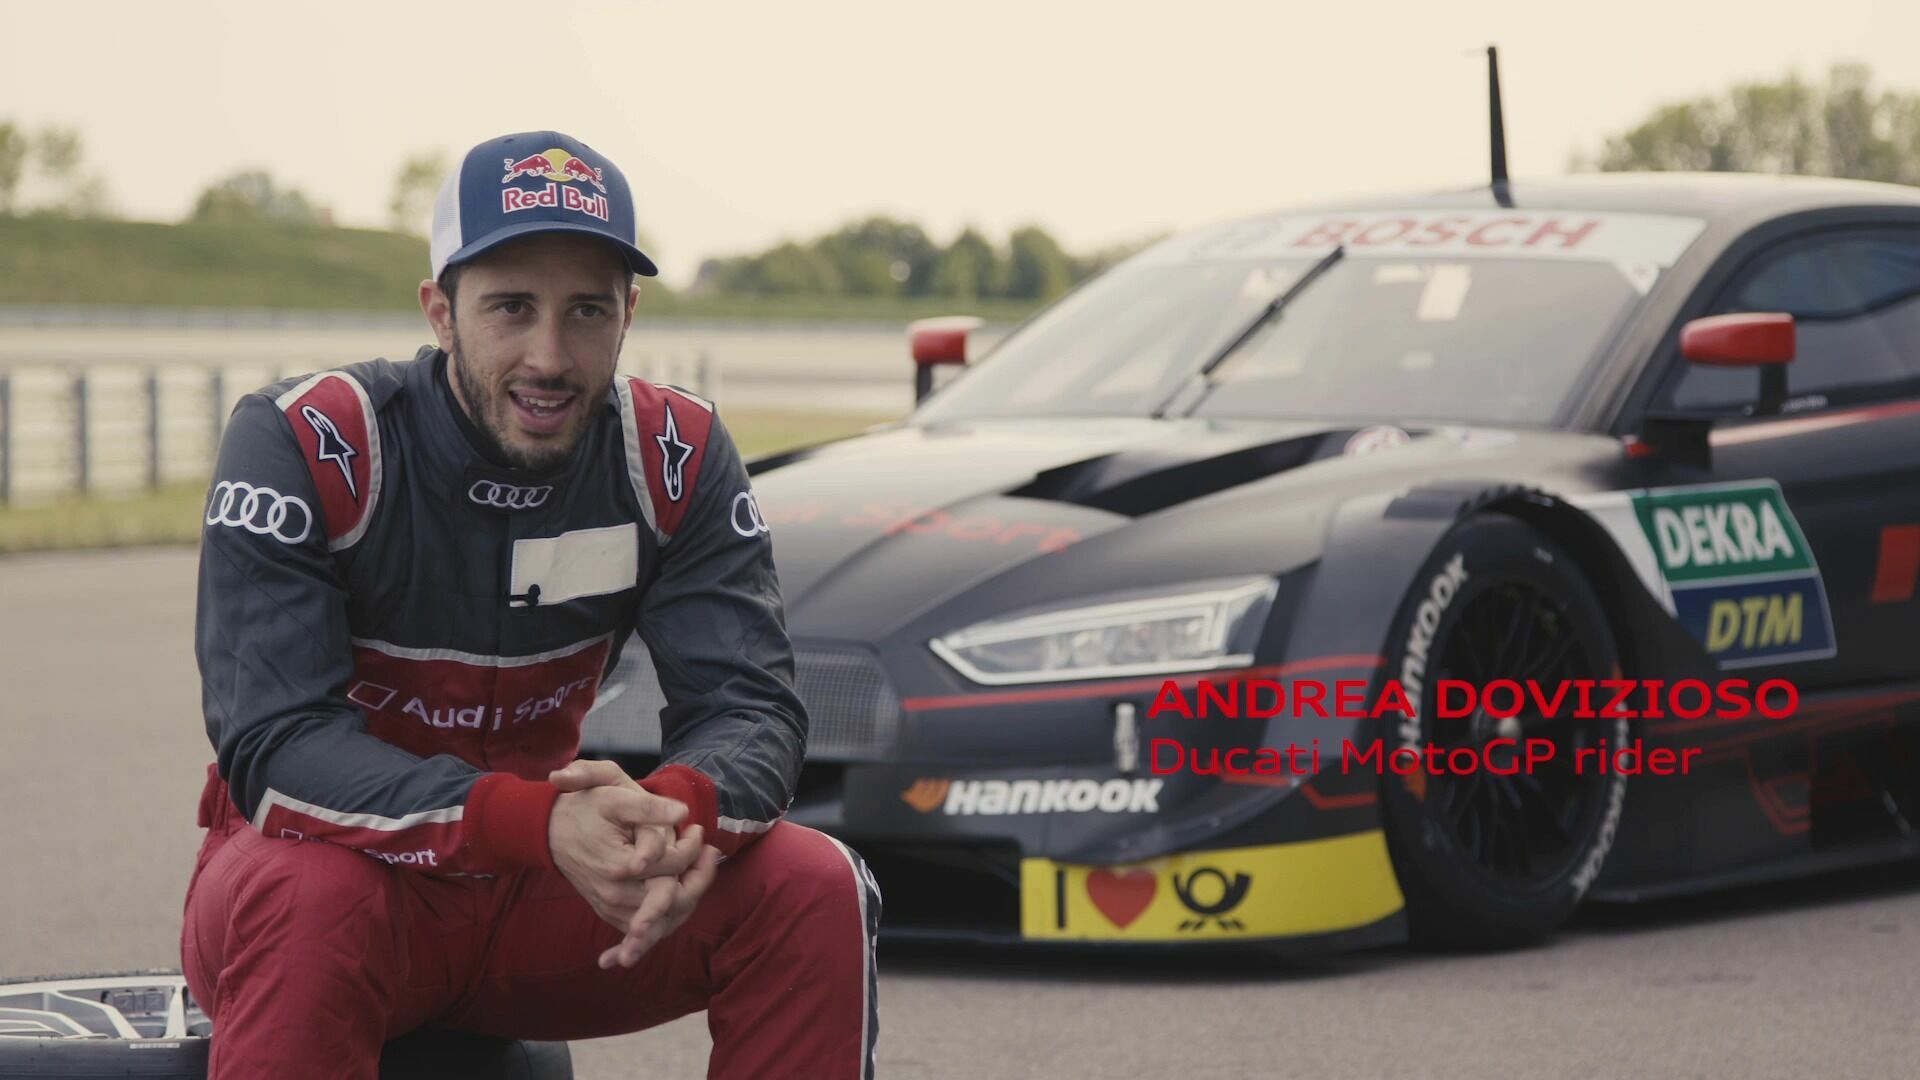 MotoGP star Dovizioso to race for Audi in the DTM